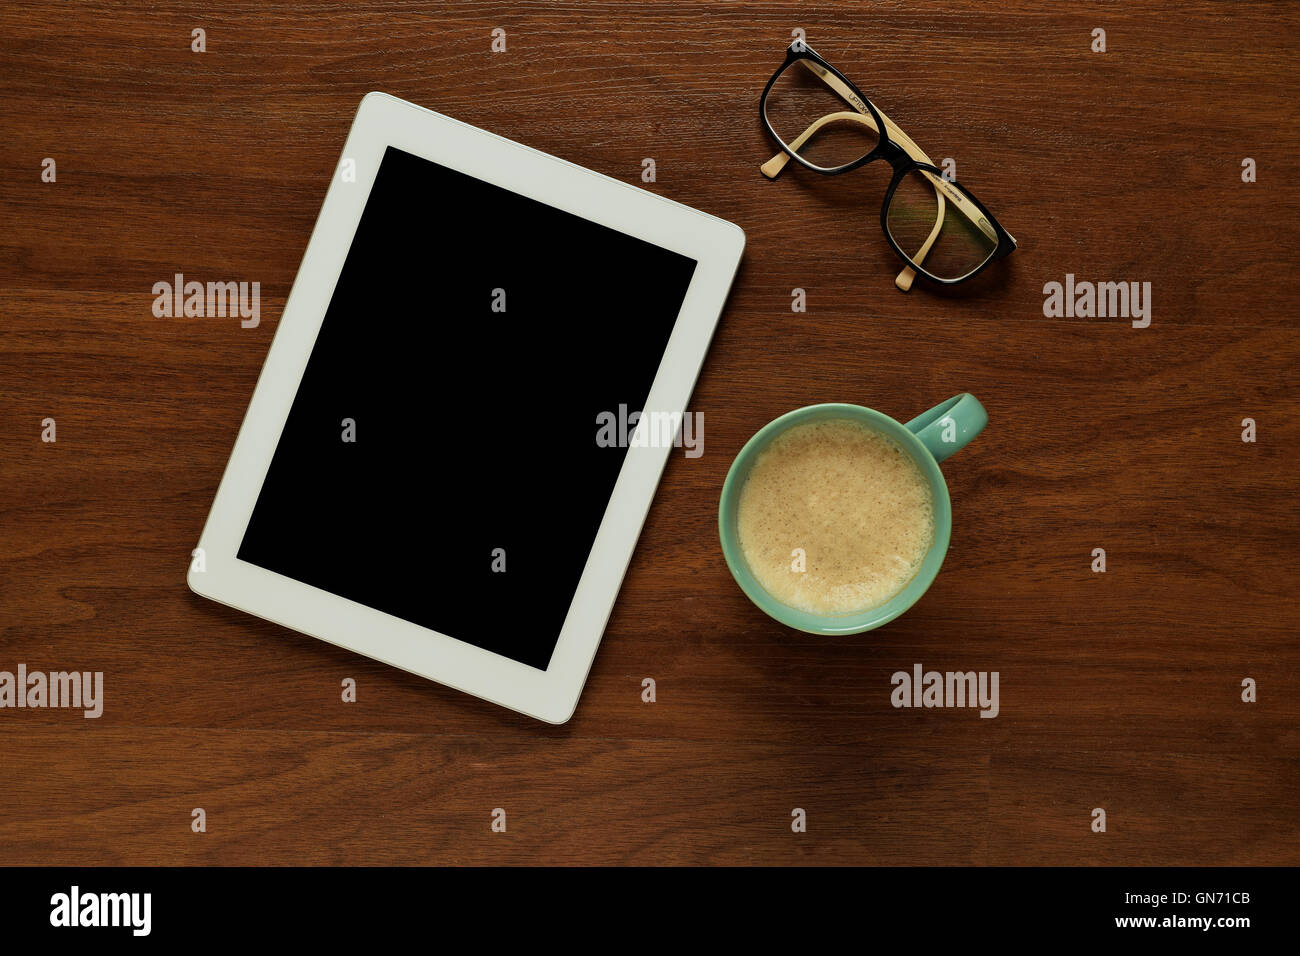 Draufsicht der Tablet-Computer, Gläser und eine Tasse Kaffee auf einem hölzernen Tisch mit Exemplar. Home Office und Lifestyle Konzept. Stockfoto